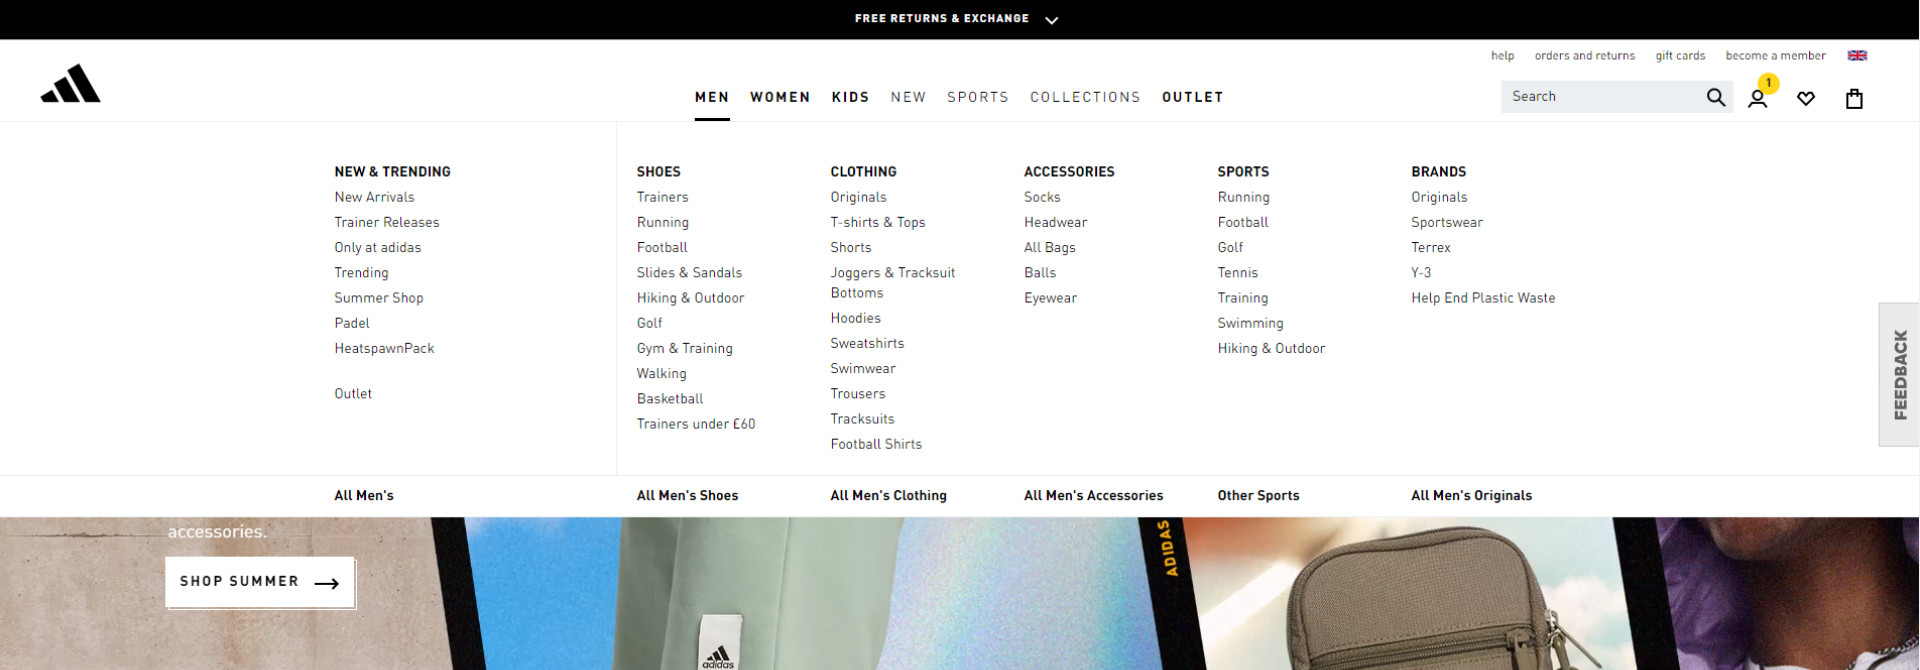 Mega menu in Adidas online store